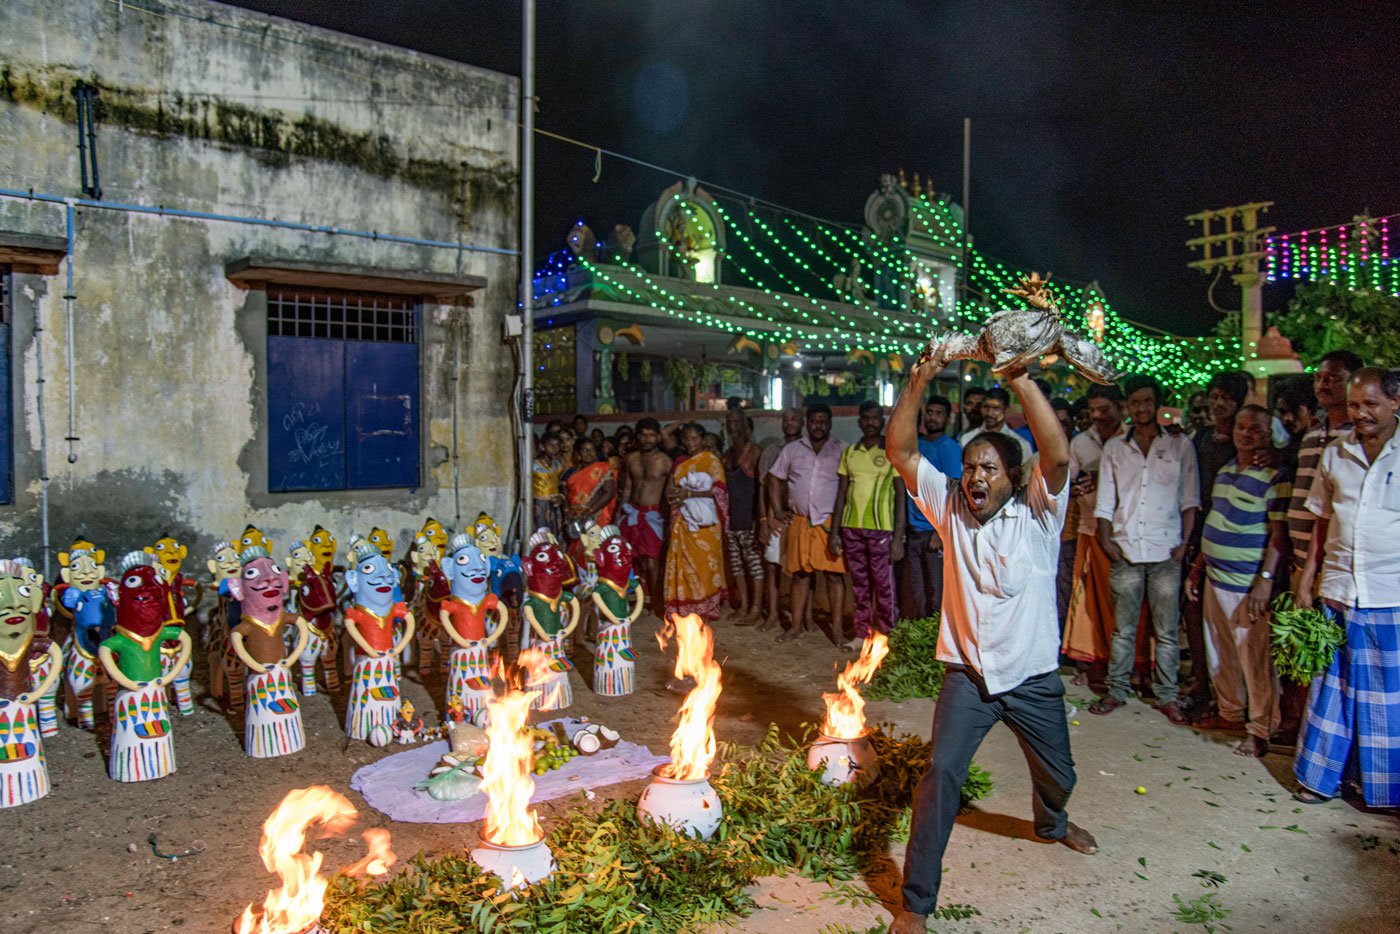 Dilli anna sacrifices a cock as part of the ritual in Ennur Kuppam festival.